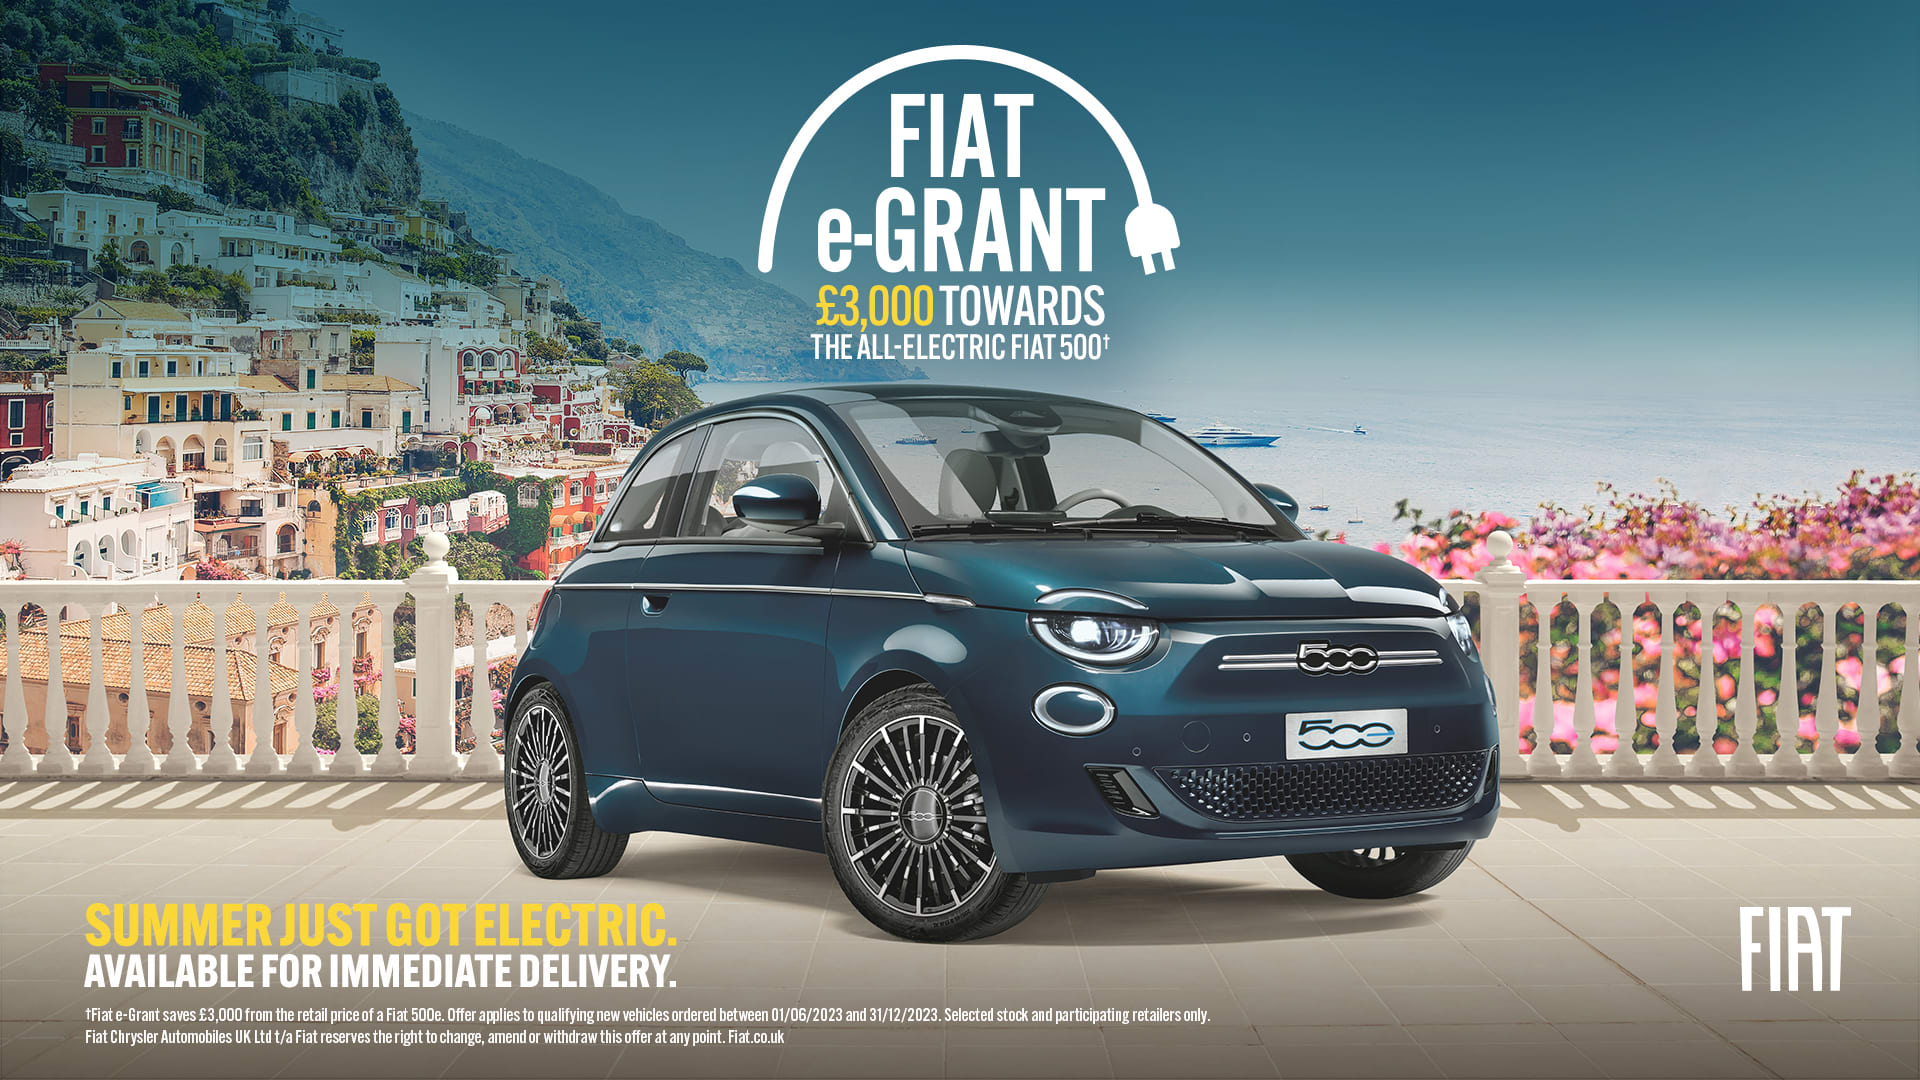 Fiat e-Grant